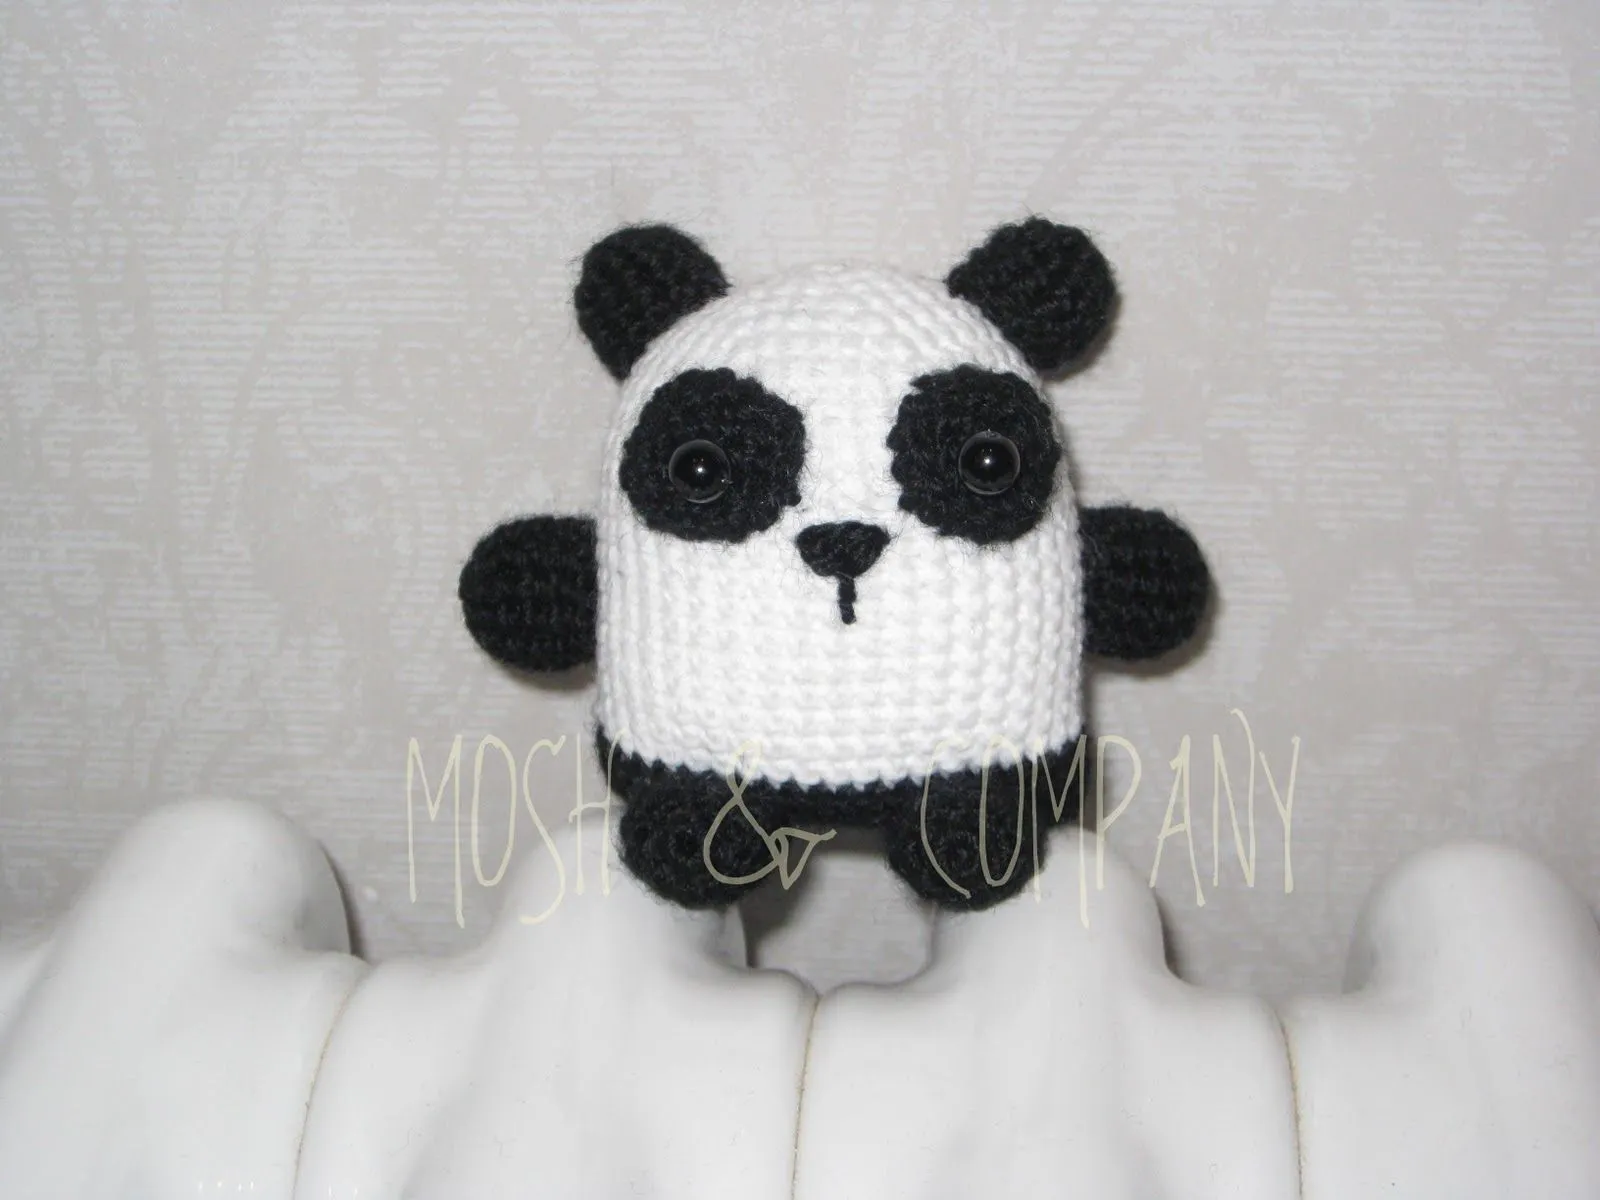 MOSH & COMPANY: Oso panda